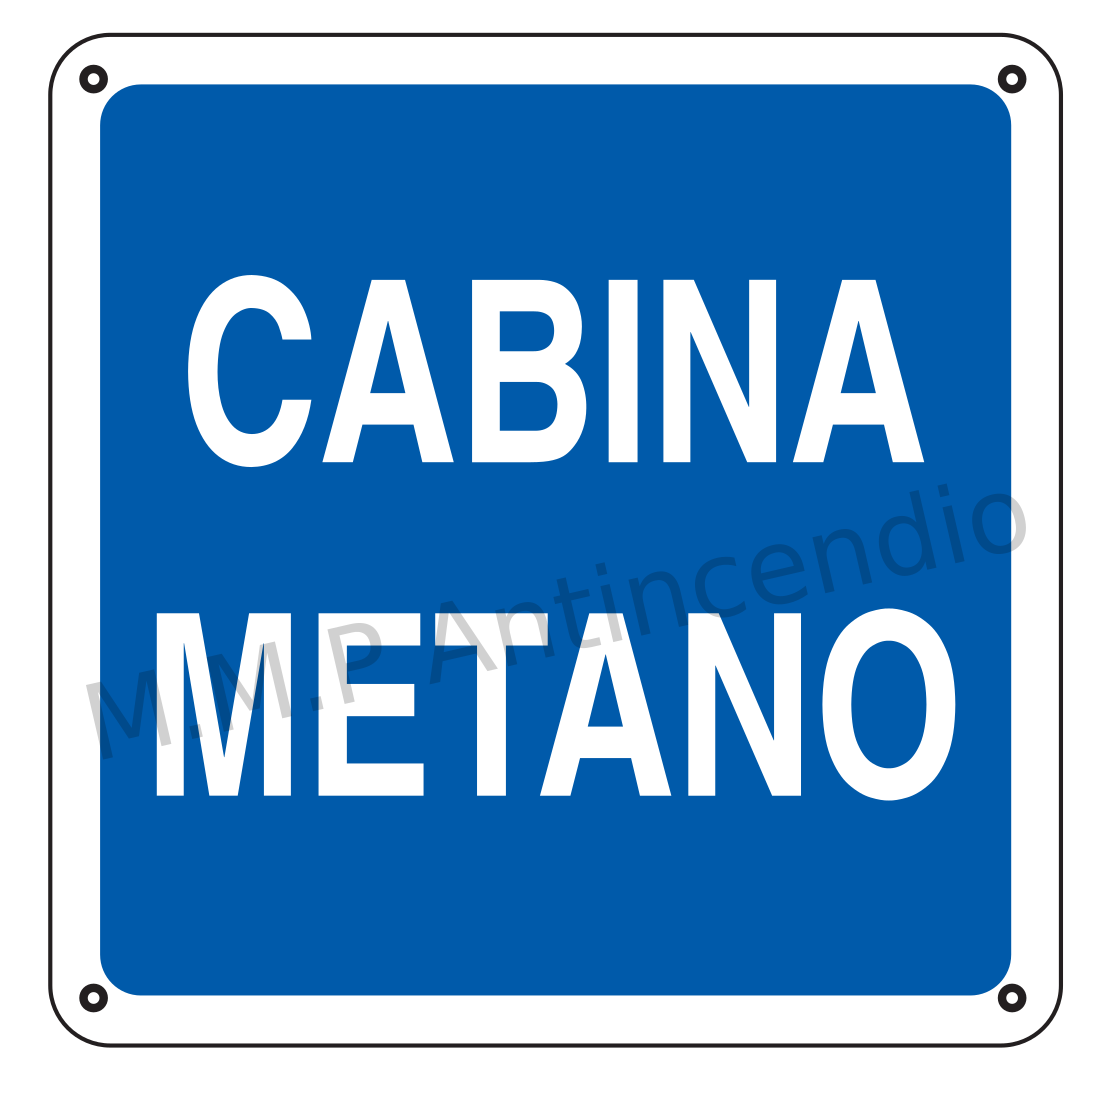 Cabina metano